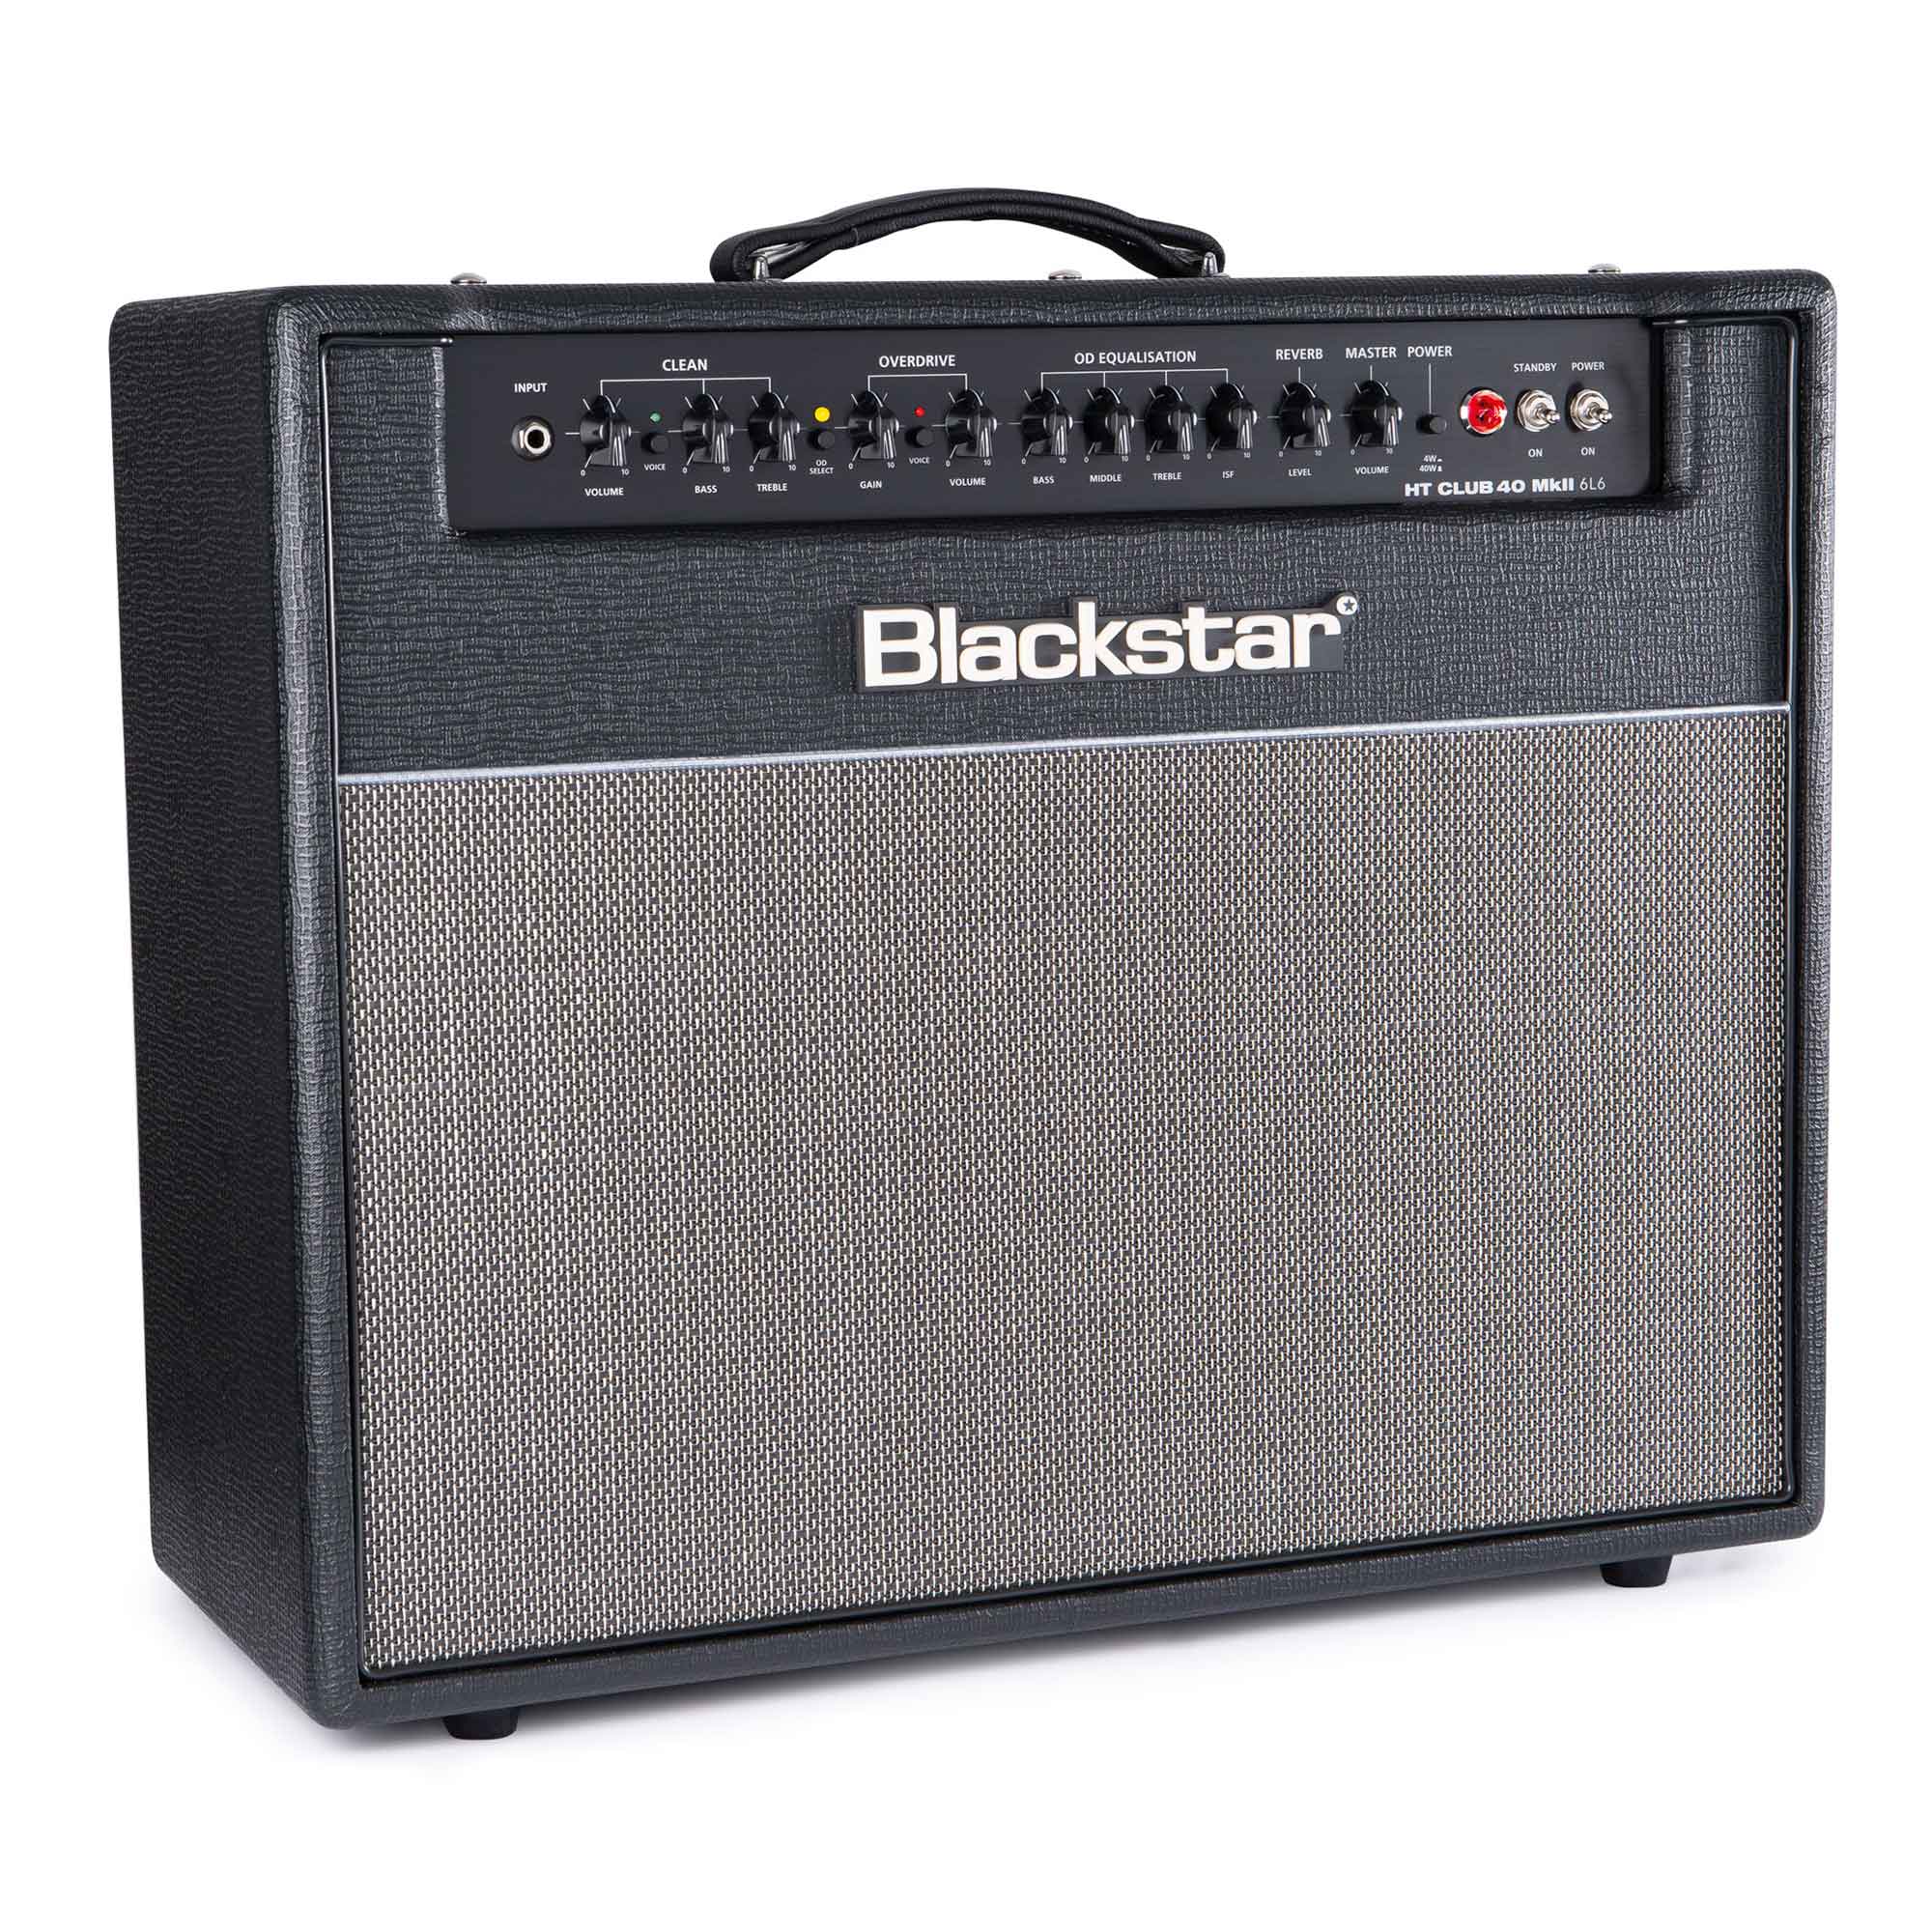 Blackstar Ht Club 40 Mkii 6l6 40w 1x12 Black - Combo voor elektrische gitaar - Variation 1